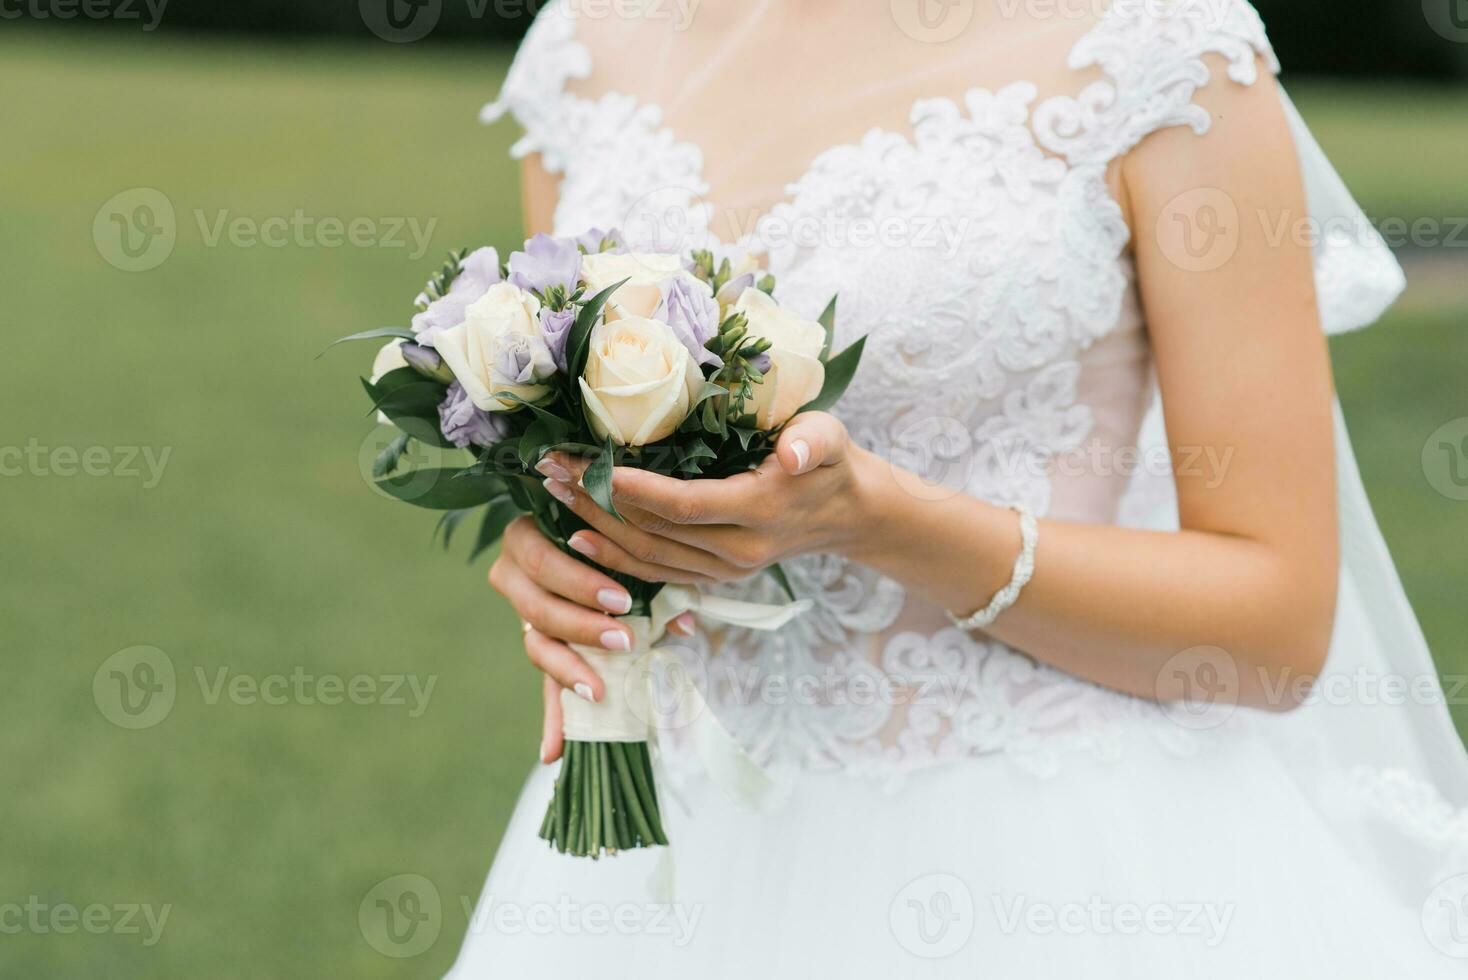 de bruid bruiloft boeket van melk rozen en lila eustoms in de handen van de bruid detailopname foto